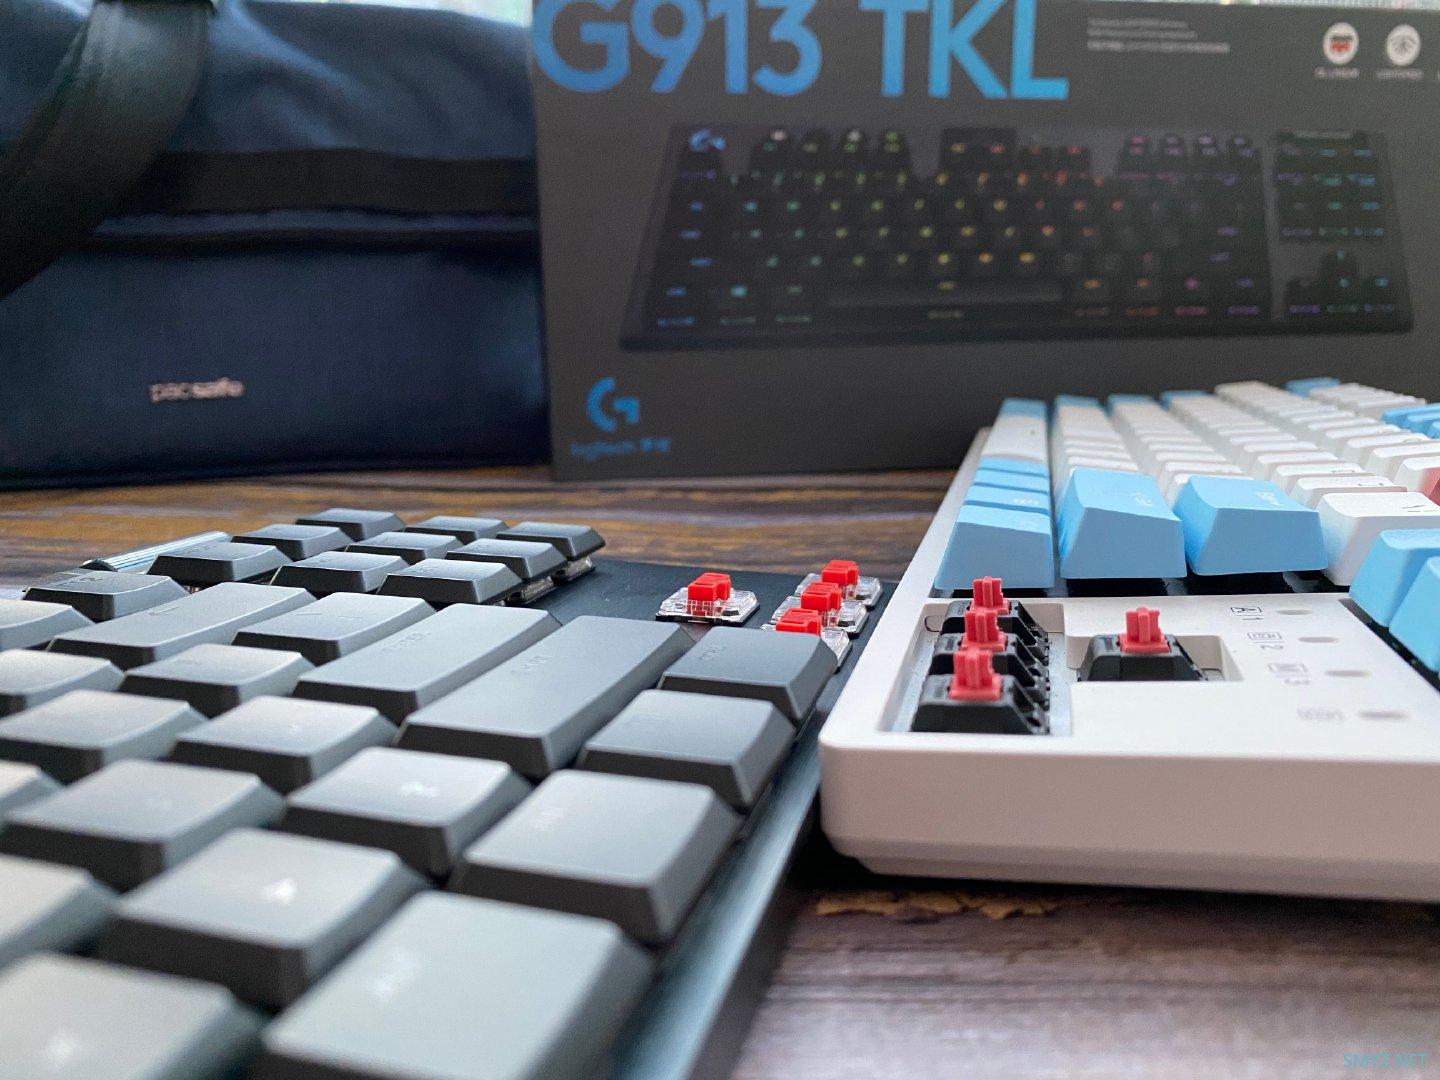 麦田拔草记 篇一百零三：机械键盘跳坑之罗技G913 TKL上手记